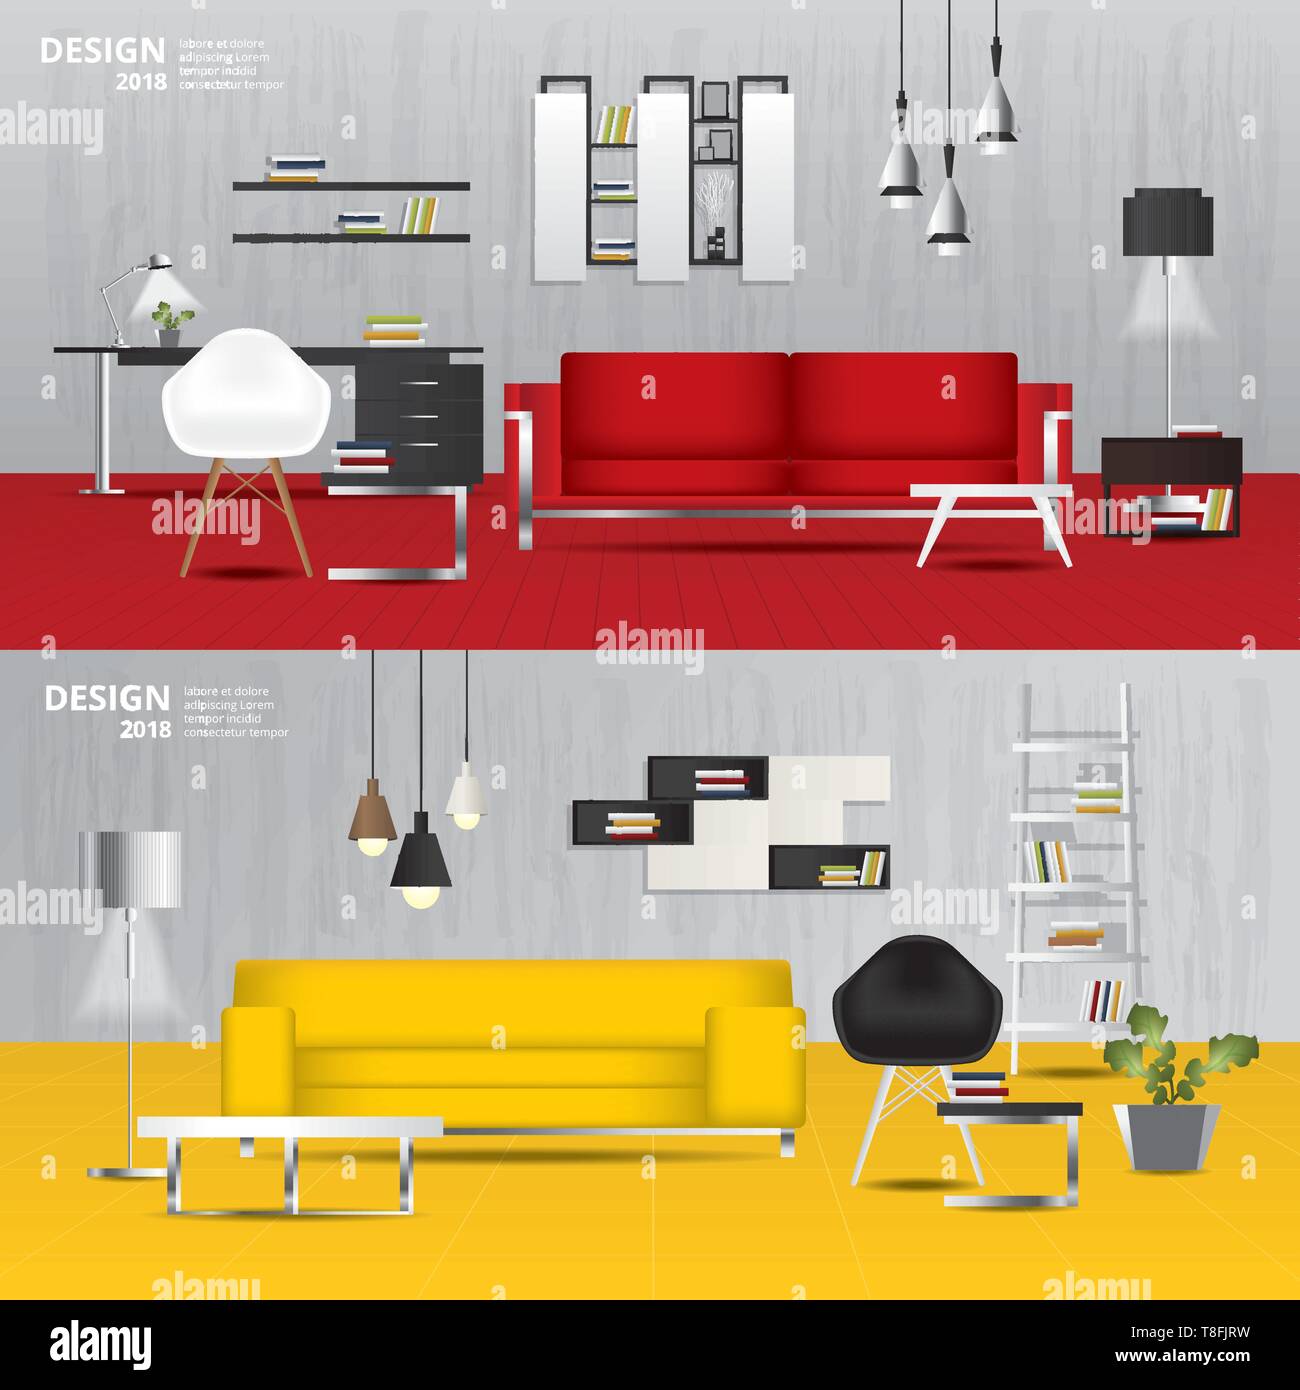 2 Banner Furniture Sale Design Template Vector Illustration Stock